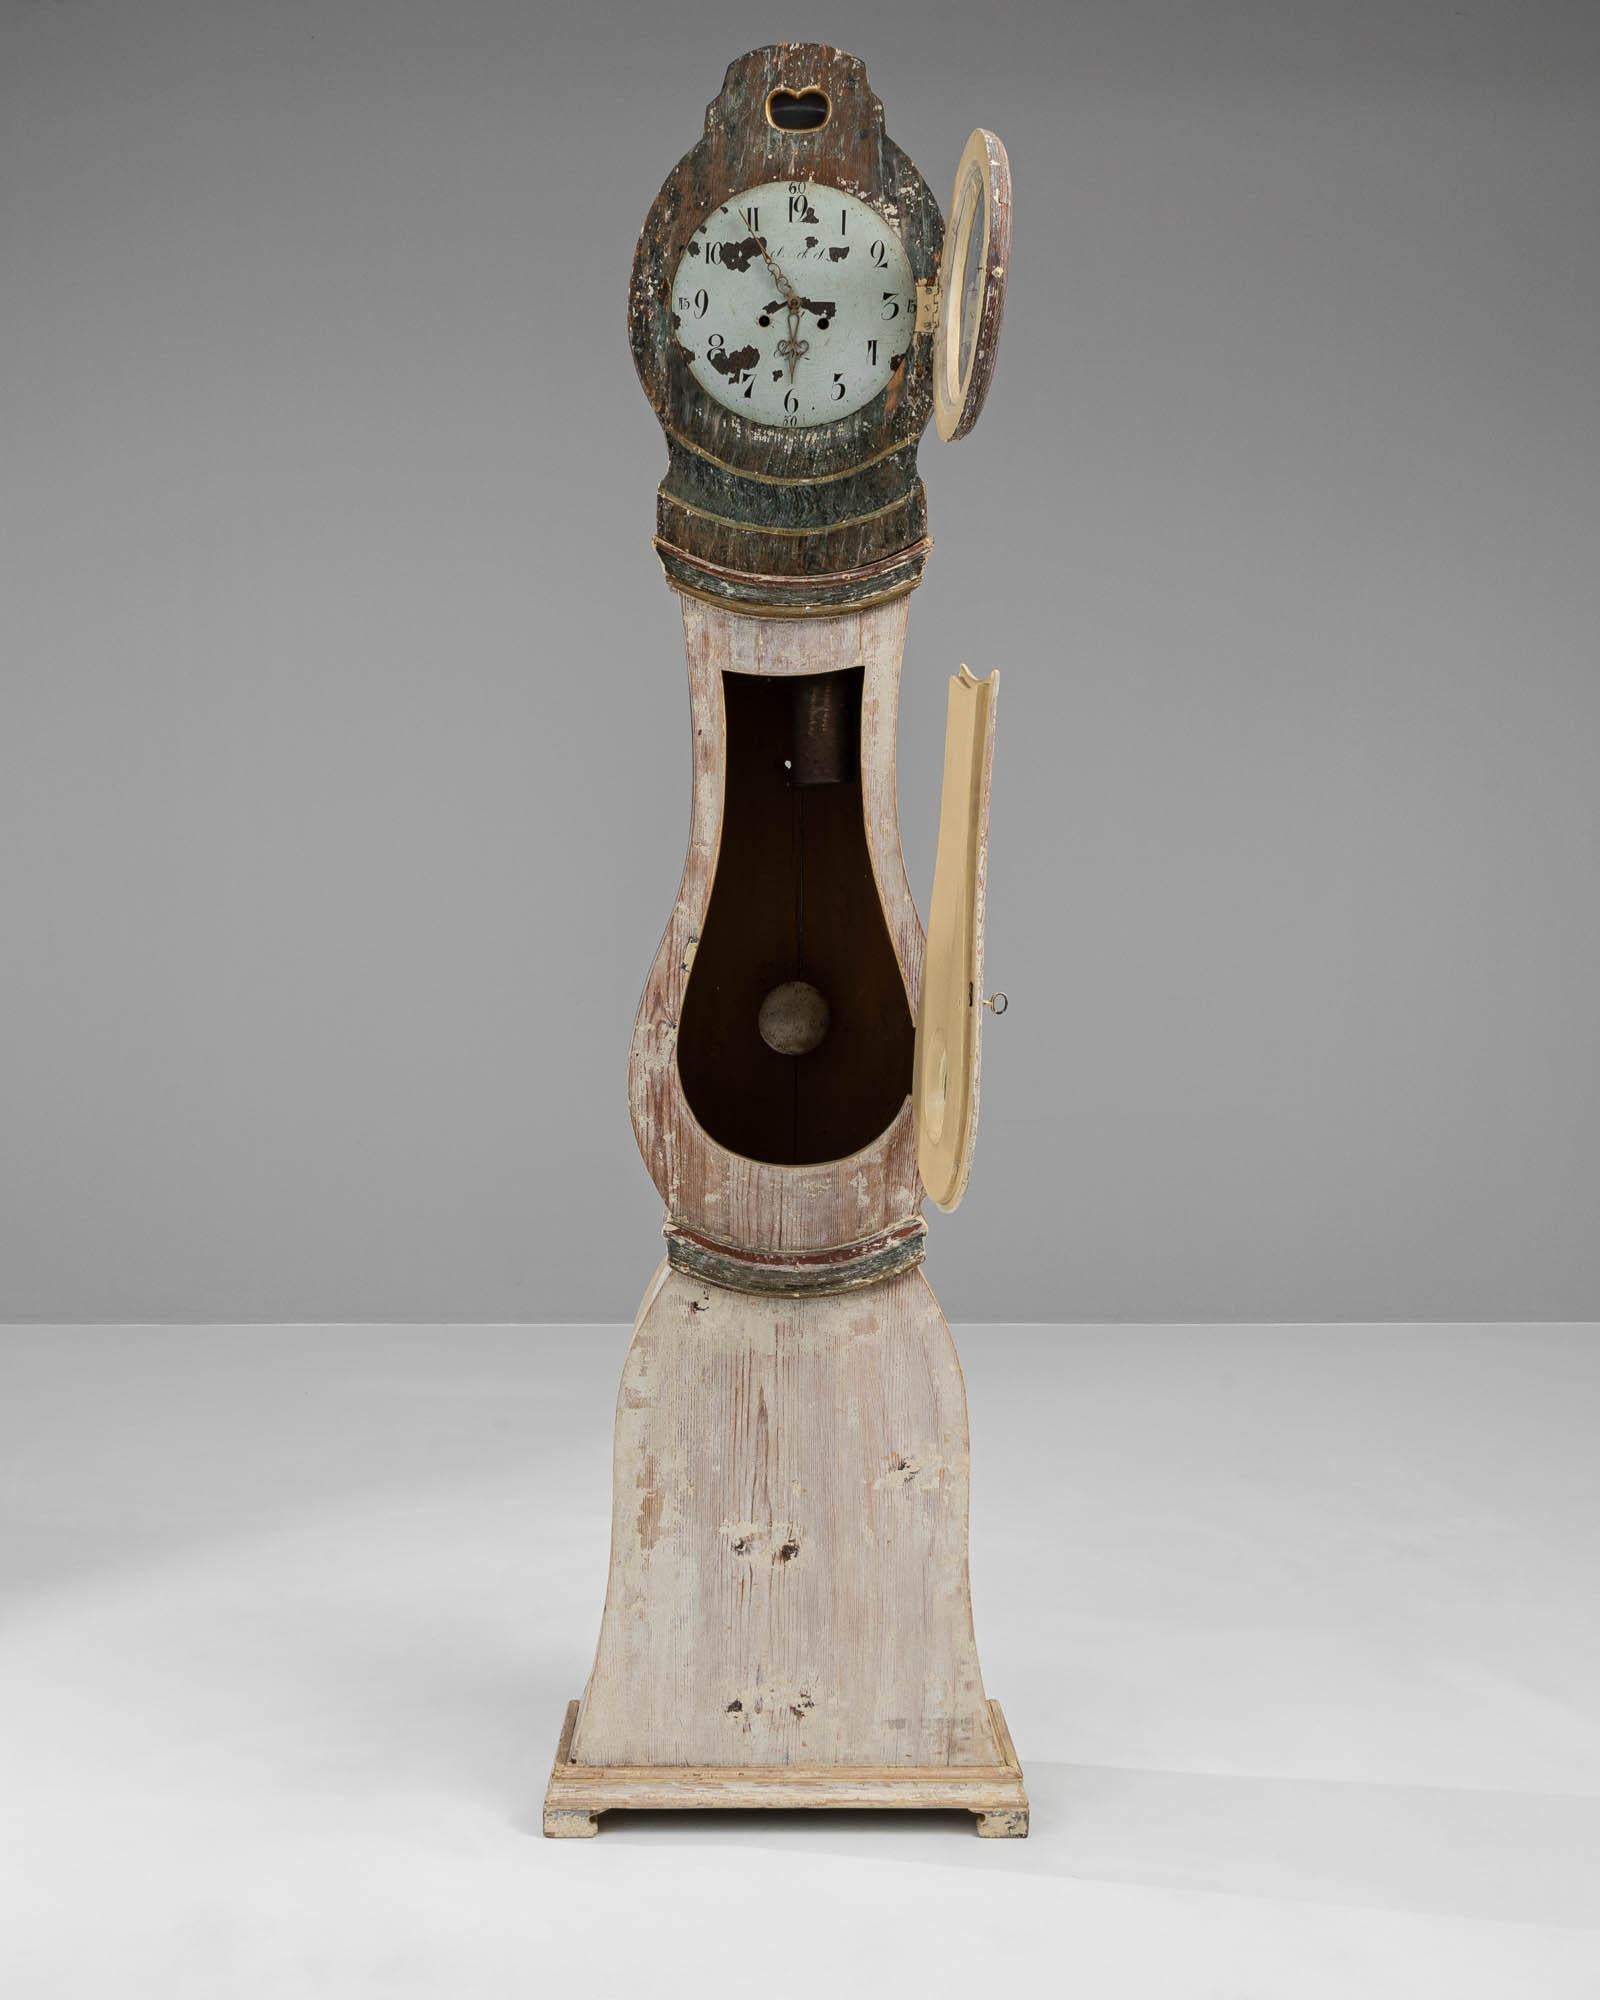 Entrez dans le monde de l'antiquité avec cette horloge suédoise en bois du XVIIIe siècle, qui incarne la grâce et le savoir-faire d'une époque révolue. Son cadre imposant, fabriqué en bois vieilli, porte les teintes douces et délavées que le temps a